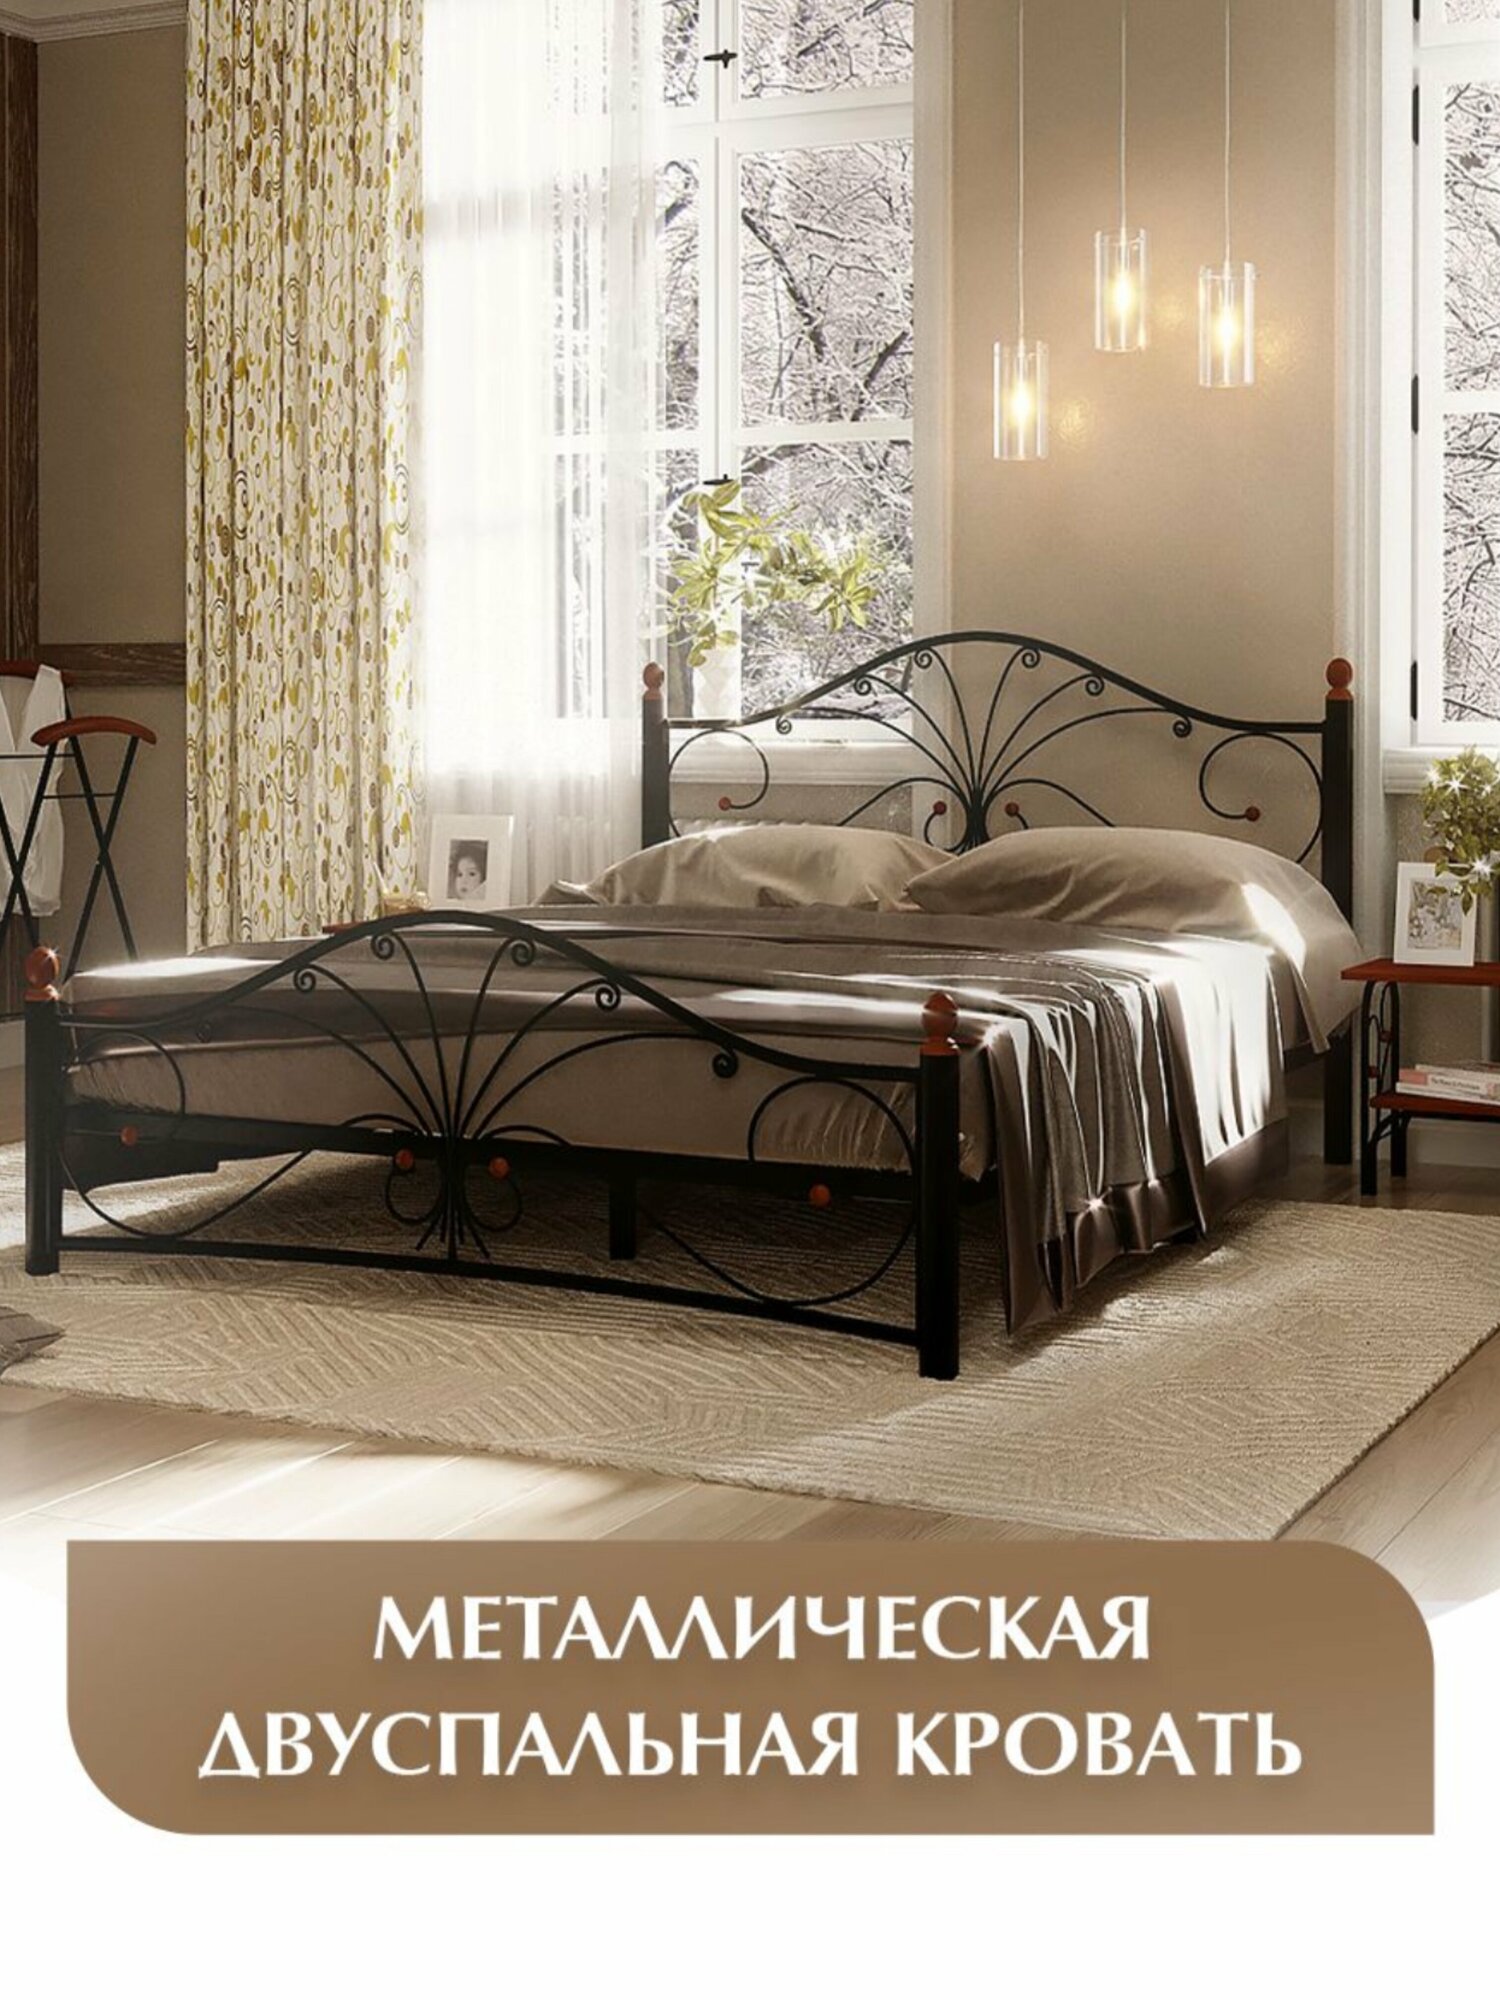 Двуспальная кровать, черная, железная, металлическая, 120х200 см